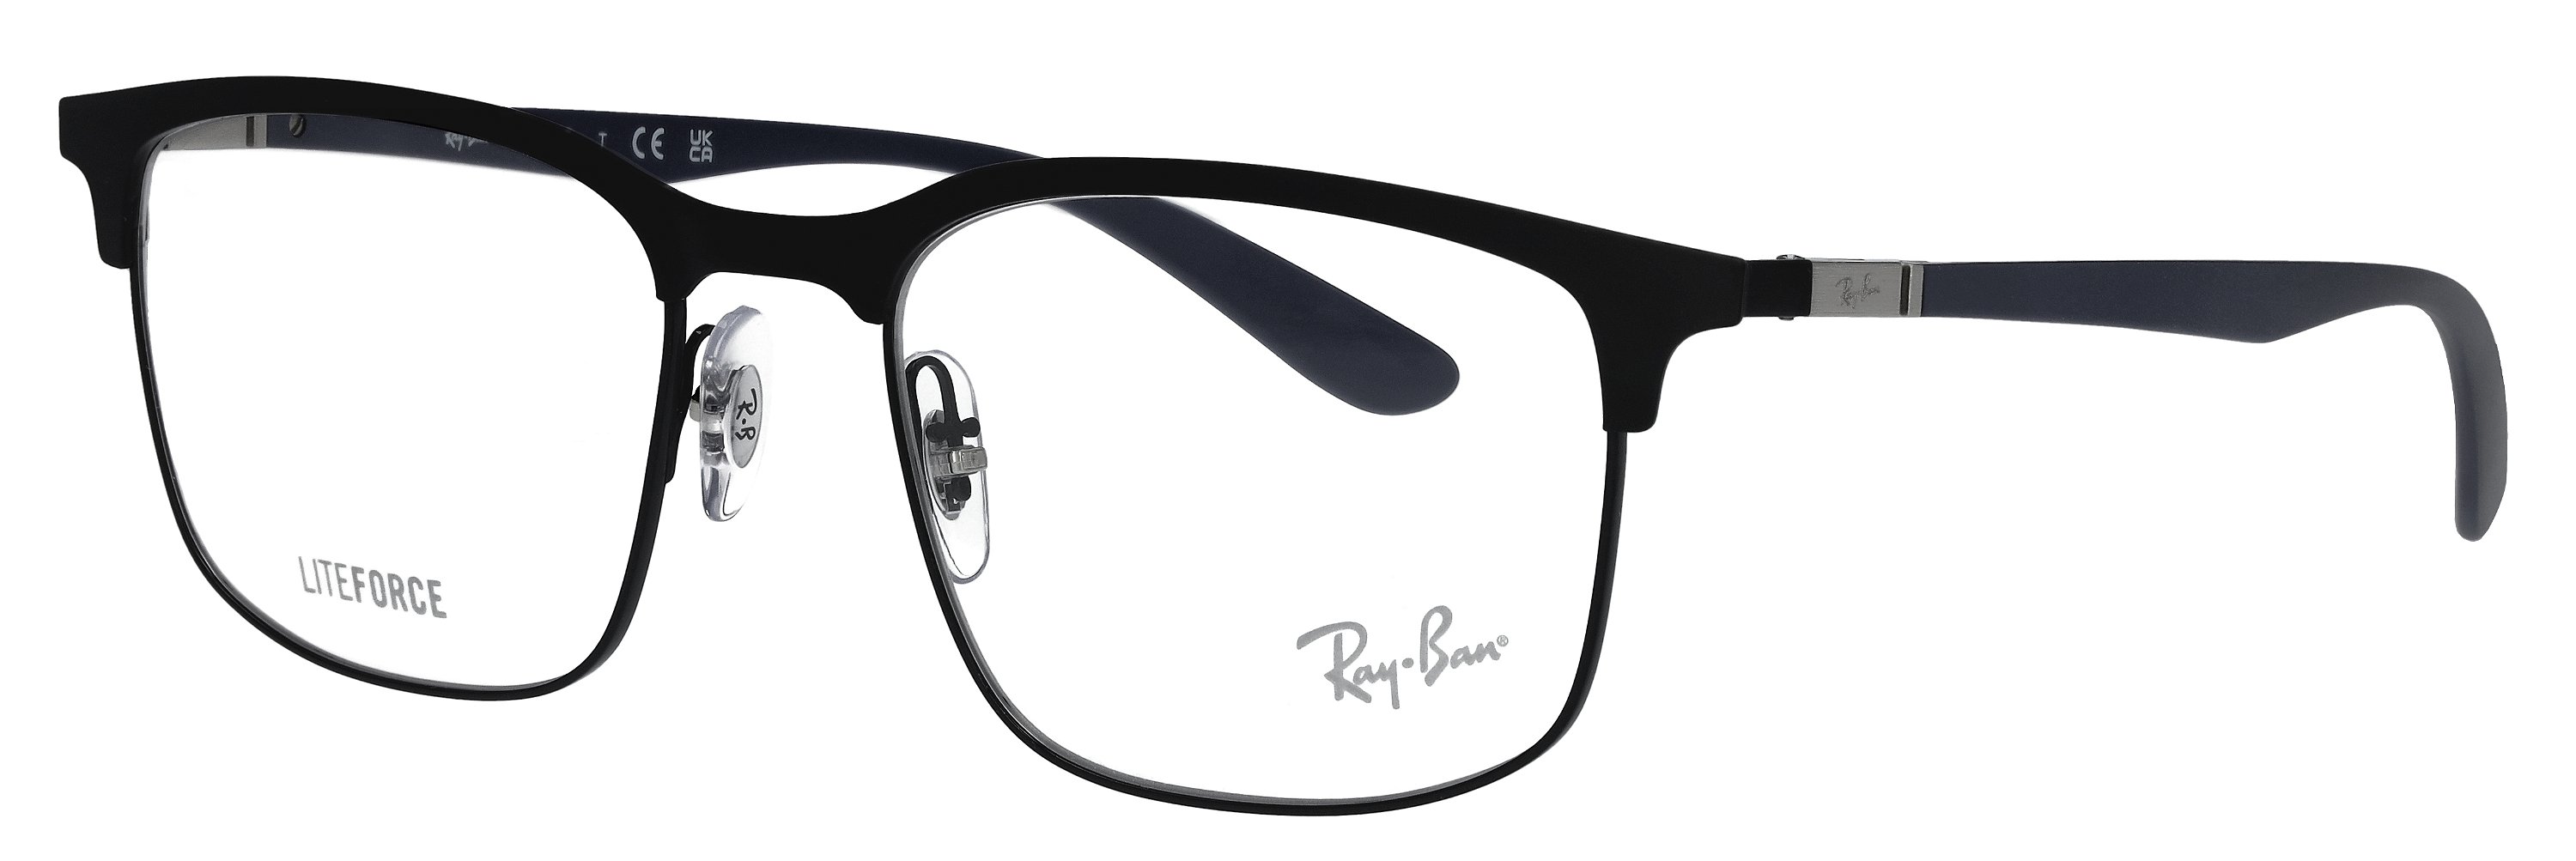 Das Bild zeigt die Korrektionsbrille RX6518 3171 von der Marke Ray Ban in schwarz.